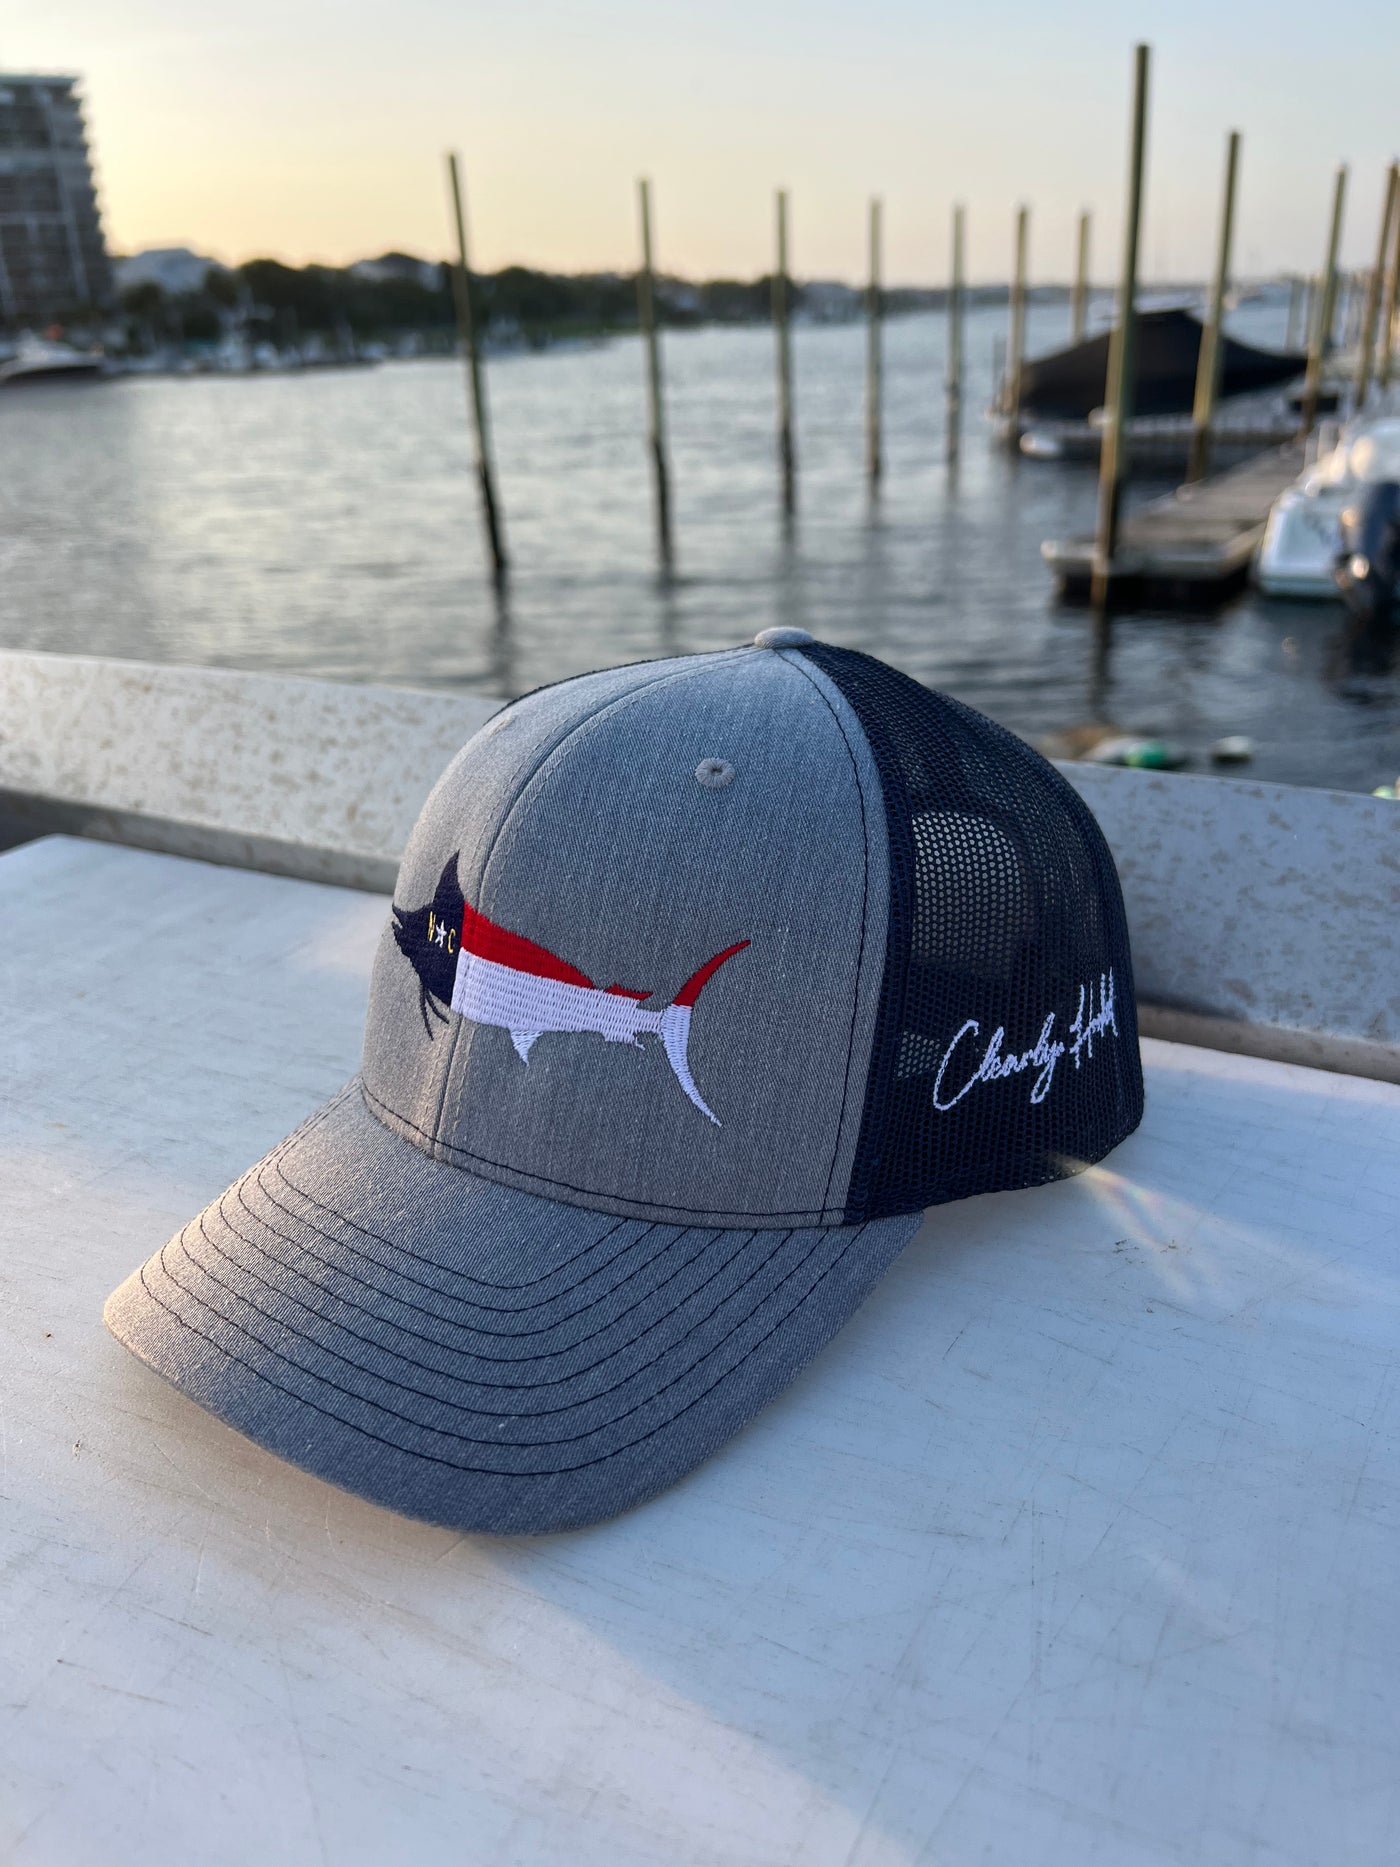 NC Marlin SnapBack Hat